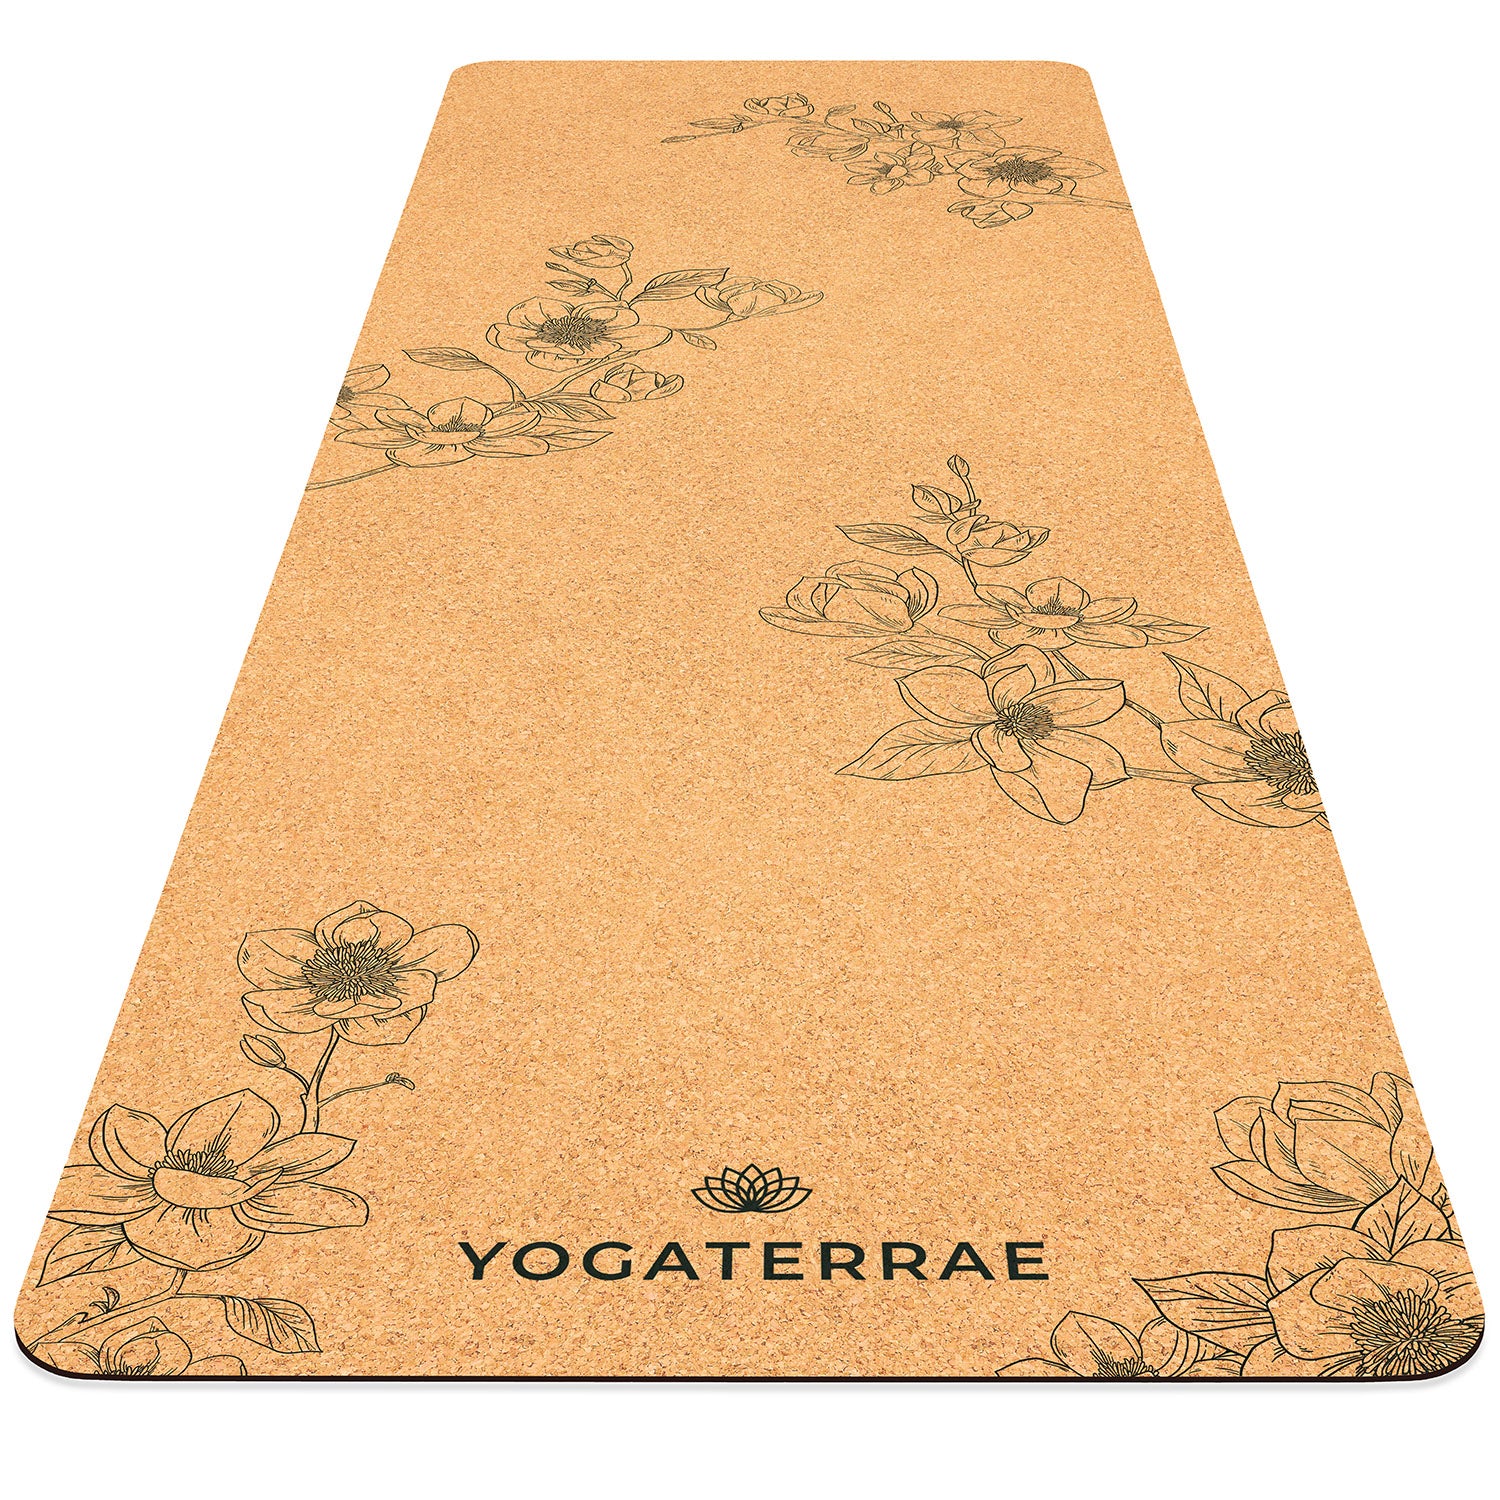 Tapis de yoga liège et caoutchouc naturels antidérapant écologique Magnolias YOGATERRAE marque française